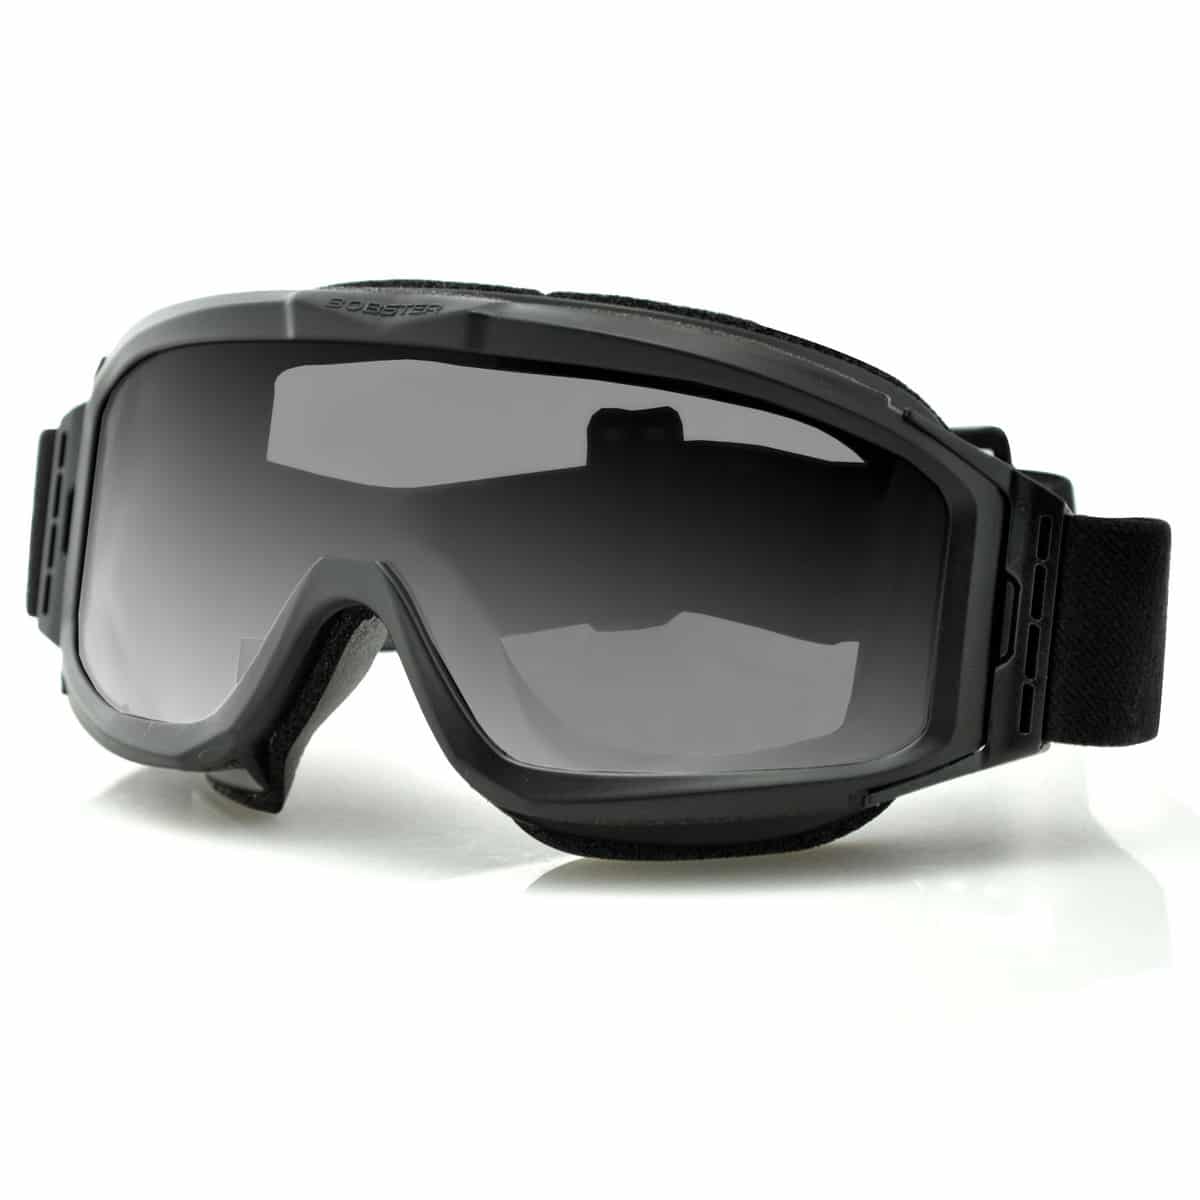 Bobster Alpha ANSI Rated Goggles - SafetyGearPro.com - #1 Online Safety ...